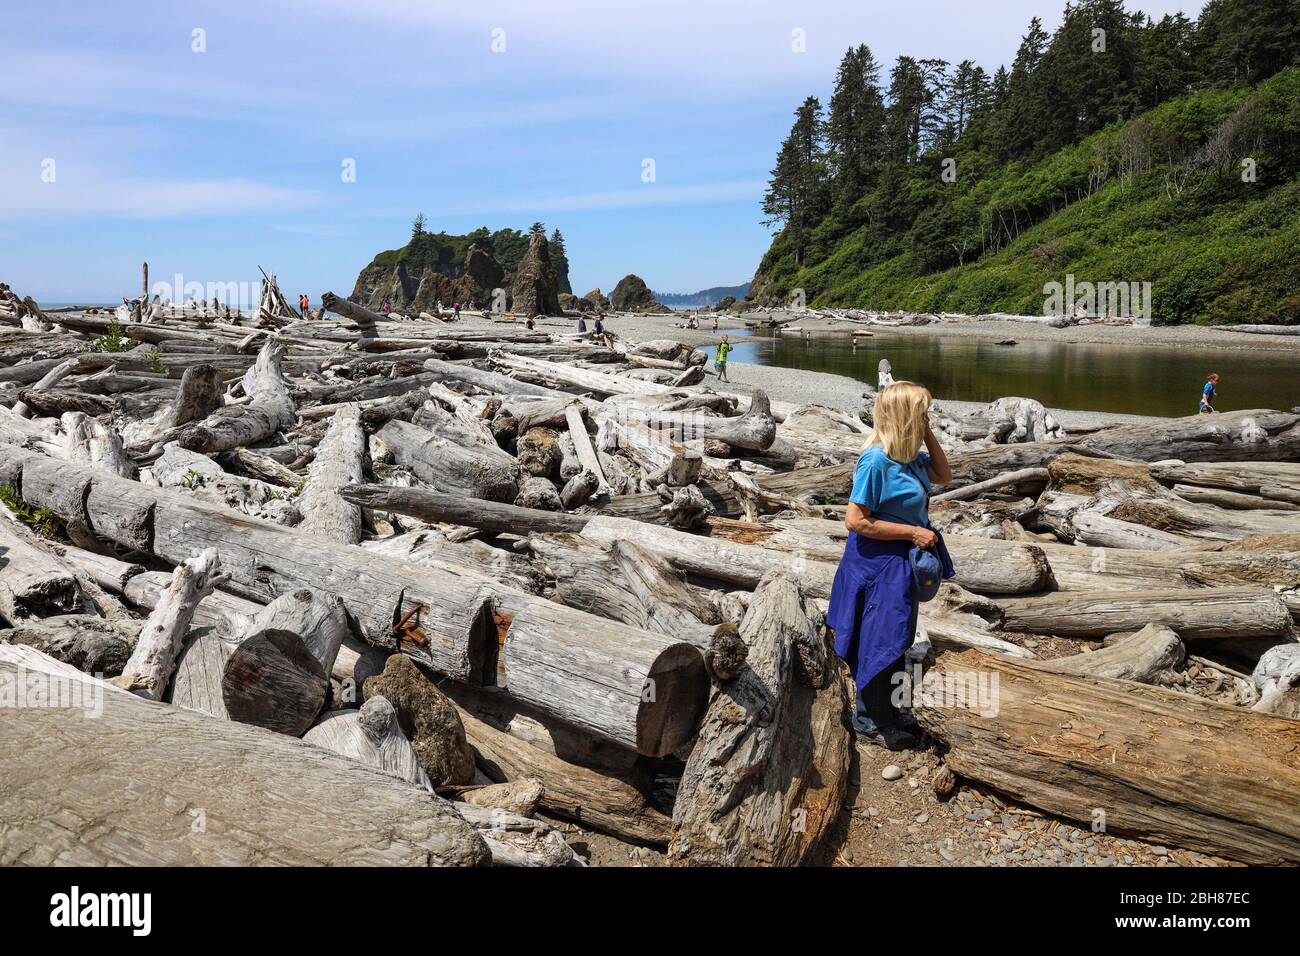 La gente deve passare attraverso il legname di deriva per raggiungere o partire Ruby Beach, Forks, Olympic National Park, Washington, USA Foto Stock